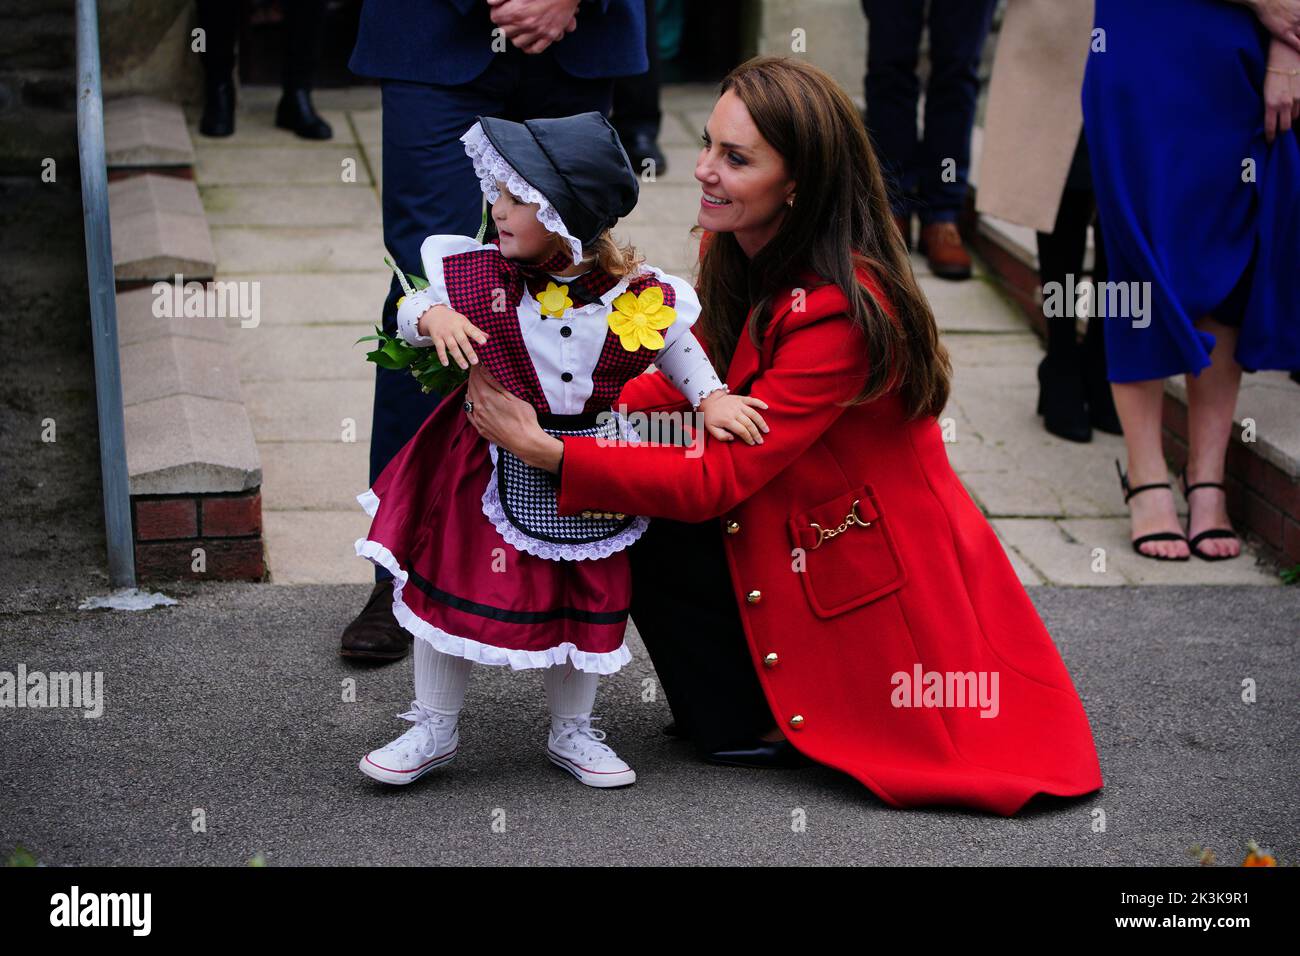 La princesse de Galles reçoit une belle fleur de Charlotte Bunting, âgée de deux ans, alors qu'elle part après une visite à l'église St Thomas, à Swansea, au pays de Galles. Date de la photo: Mardi 27 septembre 2022. Banque D'Images